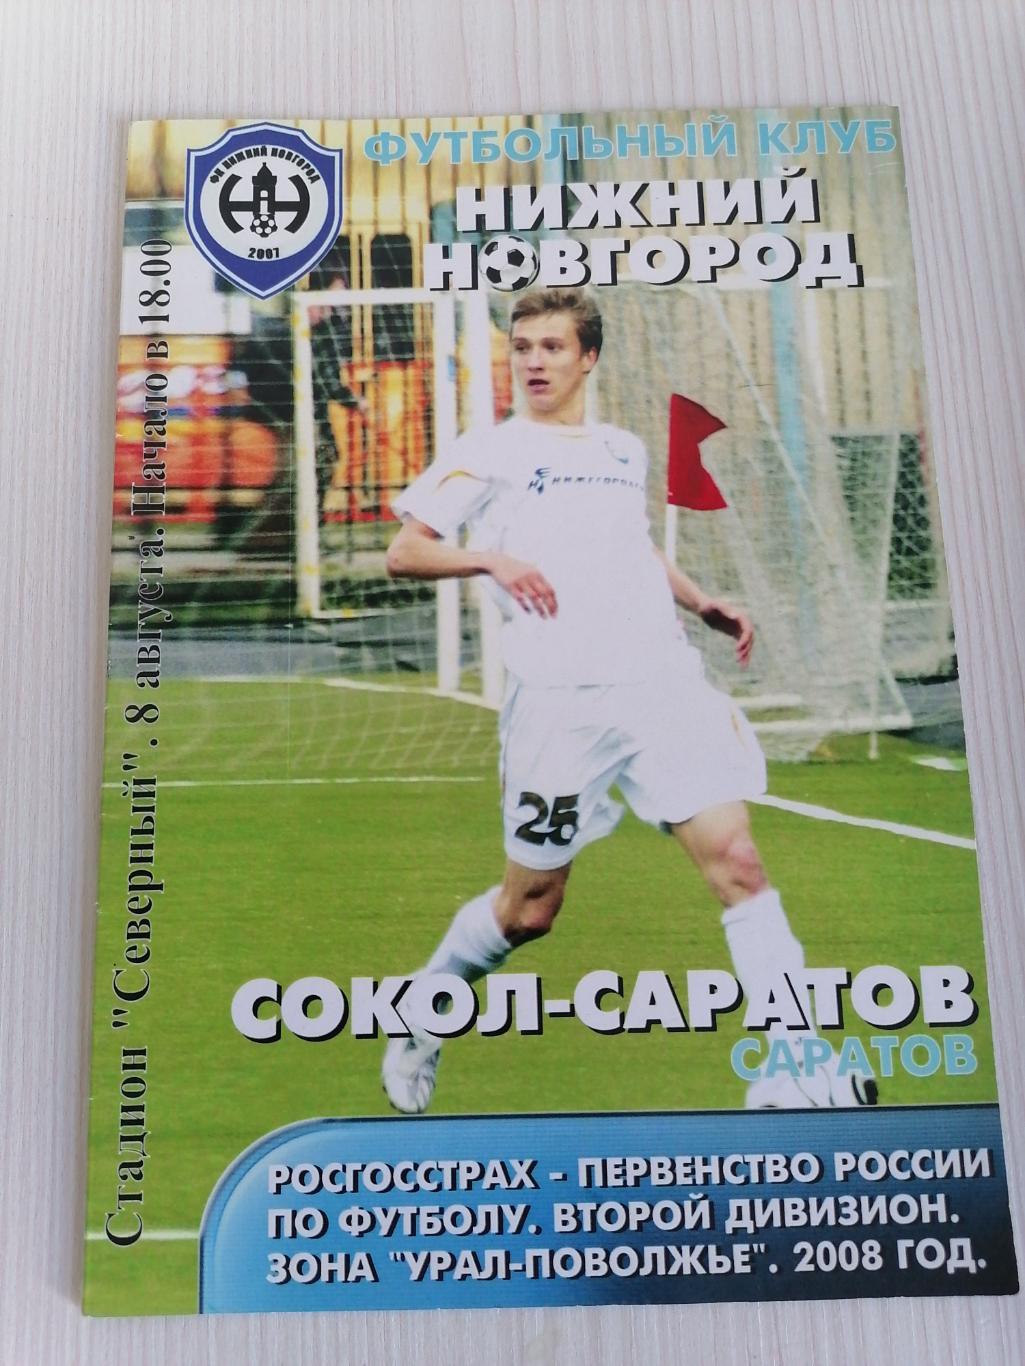 2 Лига 2008 Нижний Новгород - Сокол.